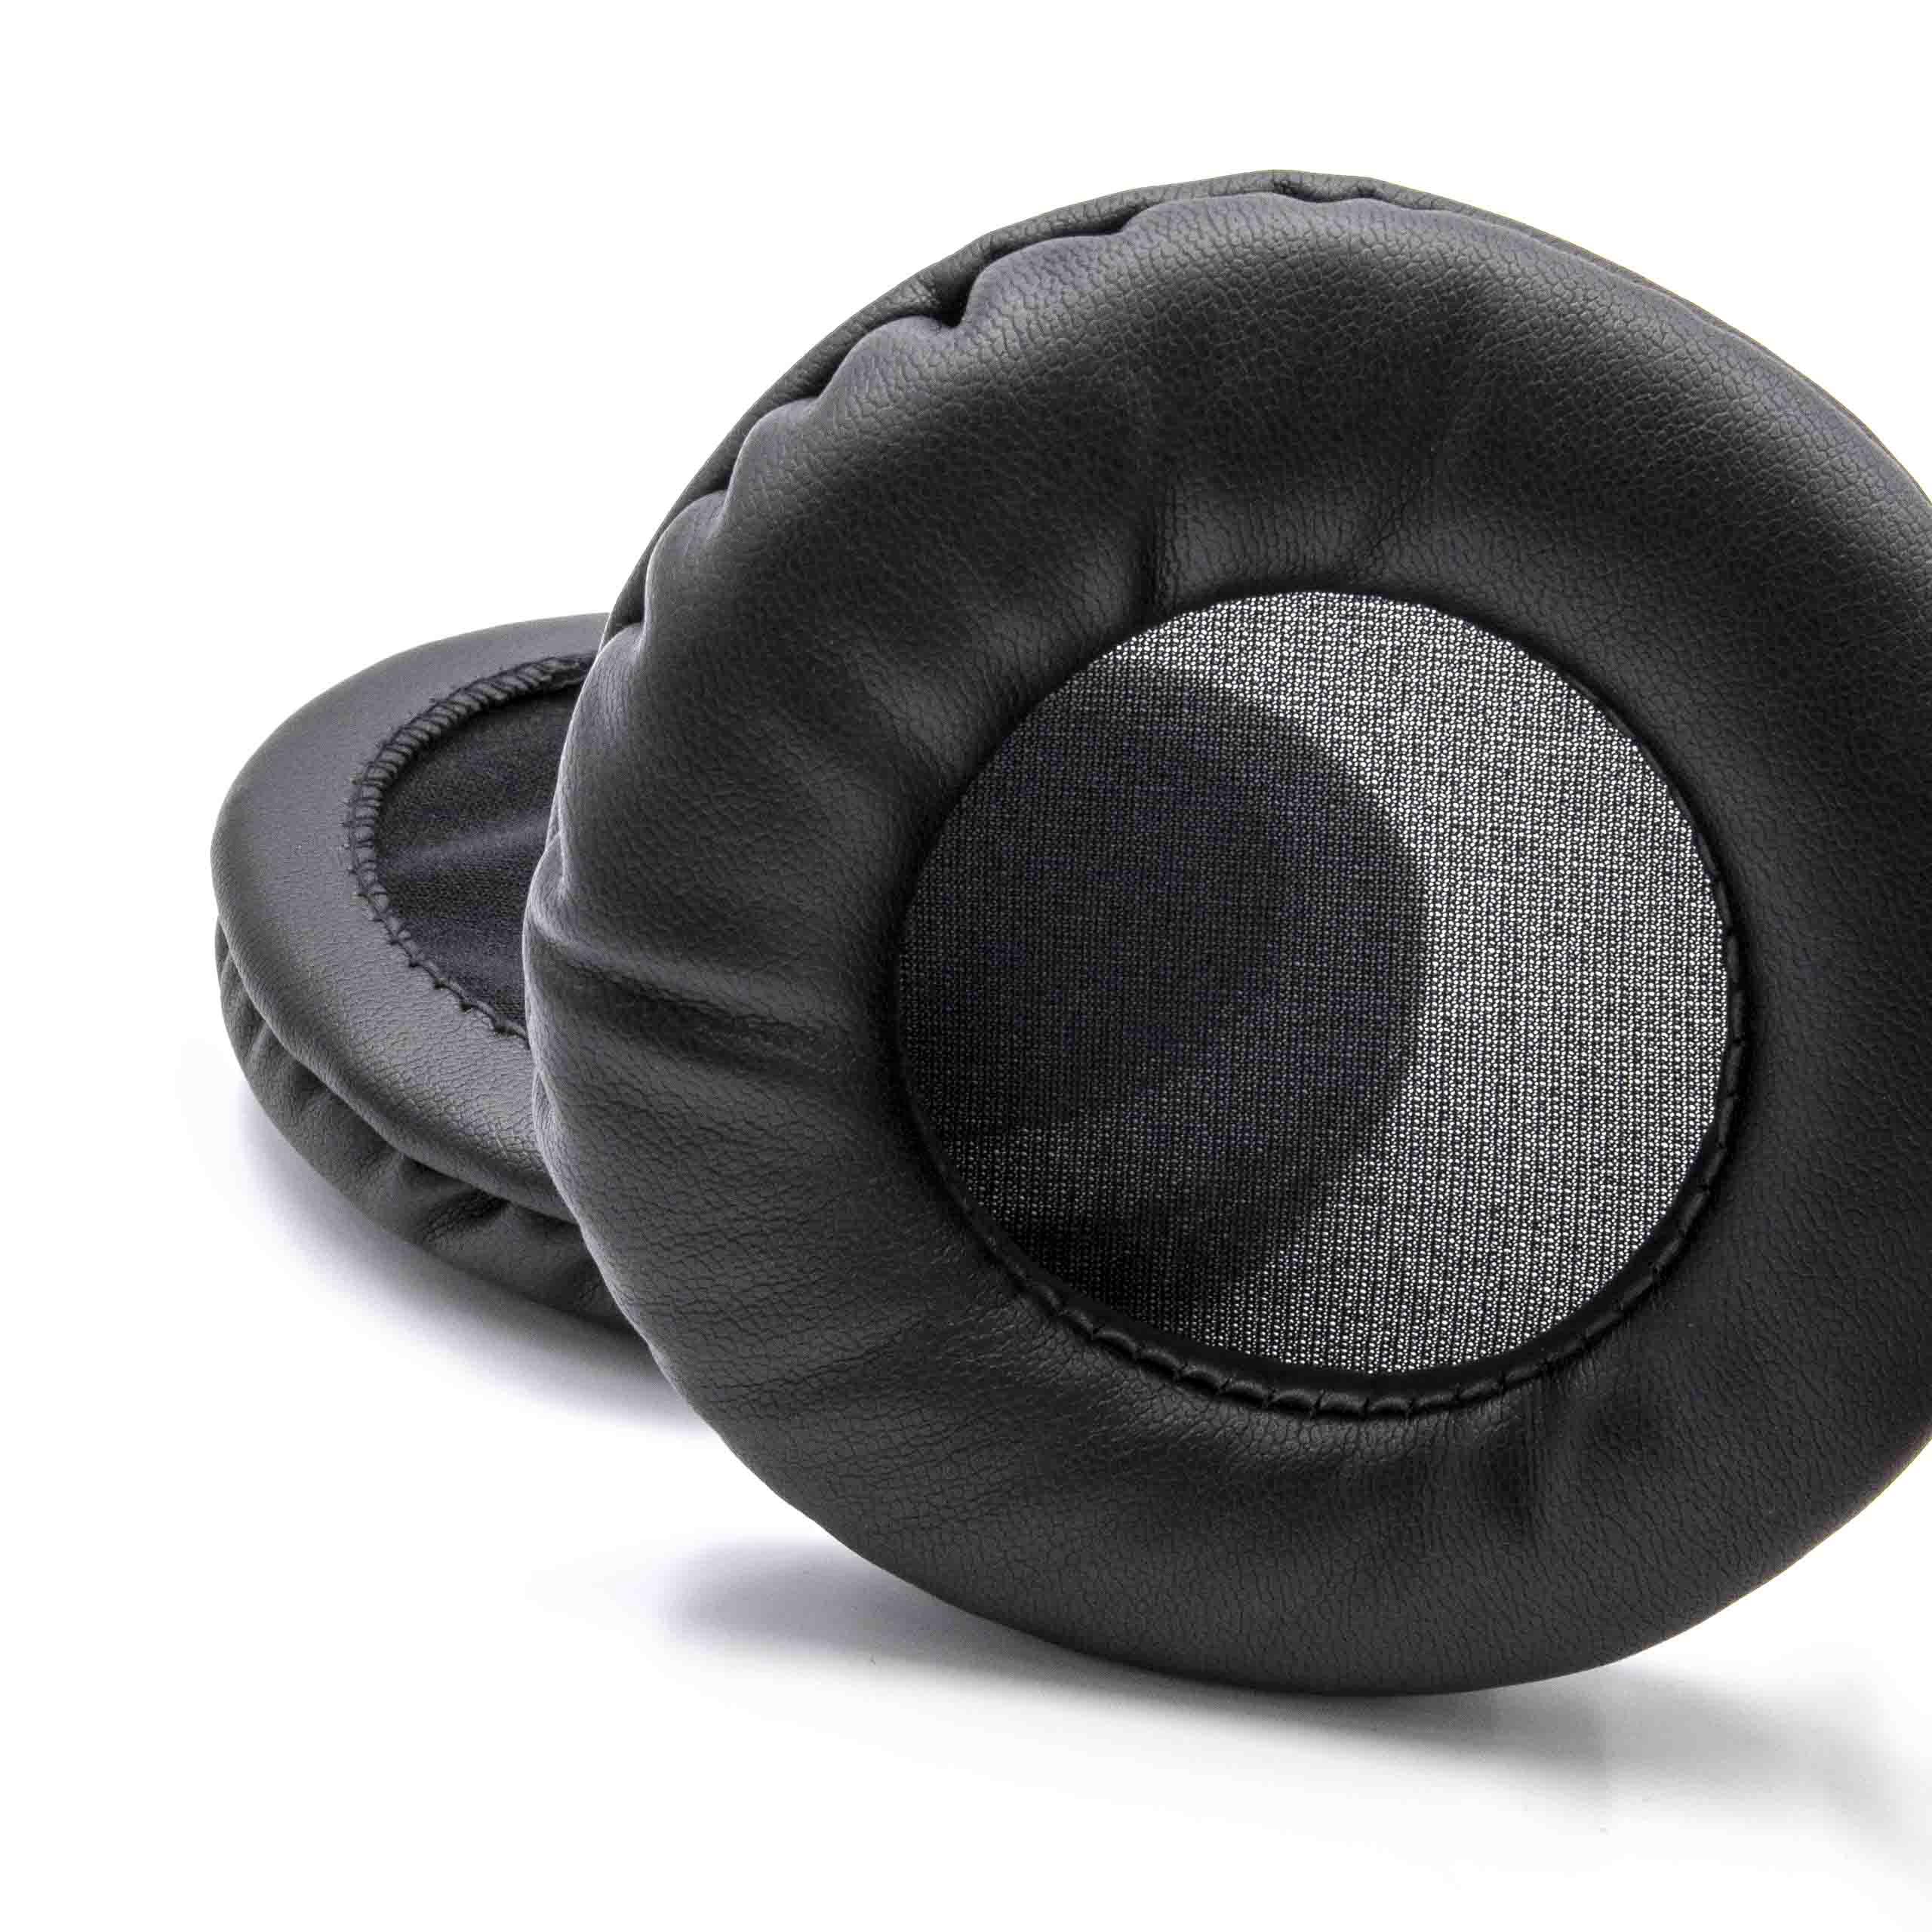 2x Ear Pads suitable for AKG HSC-271 Headphones etc. - polyurethane, 10 cm External Diameter